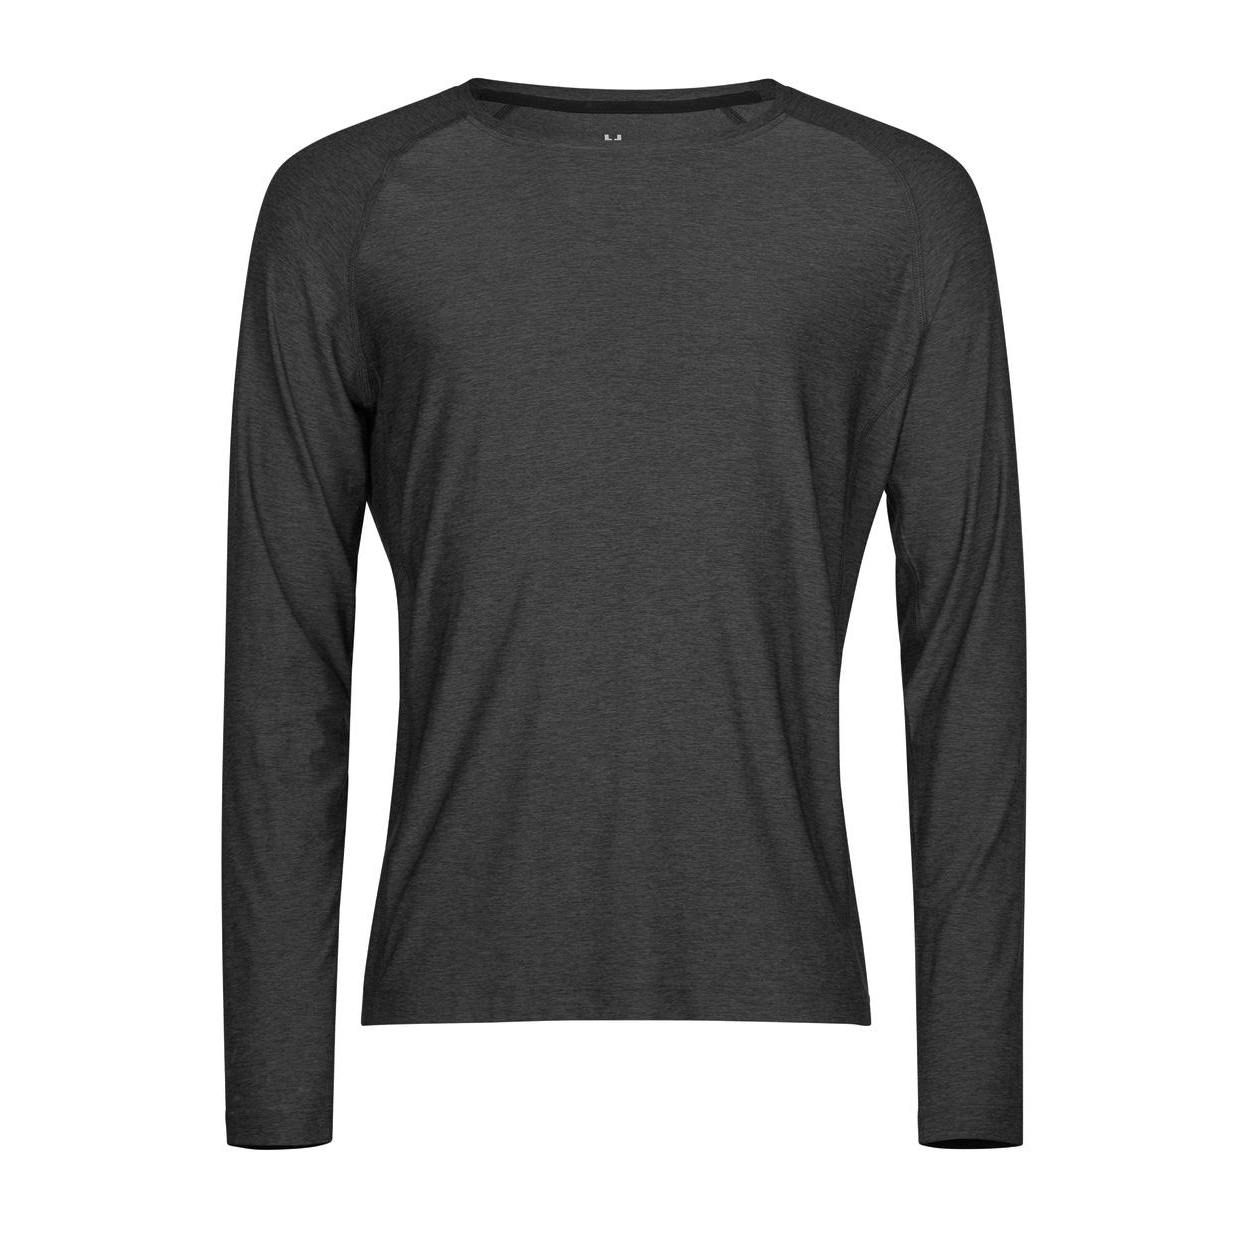 Triko pánské Stedman Tee Jays CoolDry tričko s dlouhými rukávy - tmavě šedé, XL